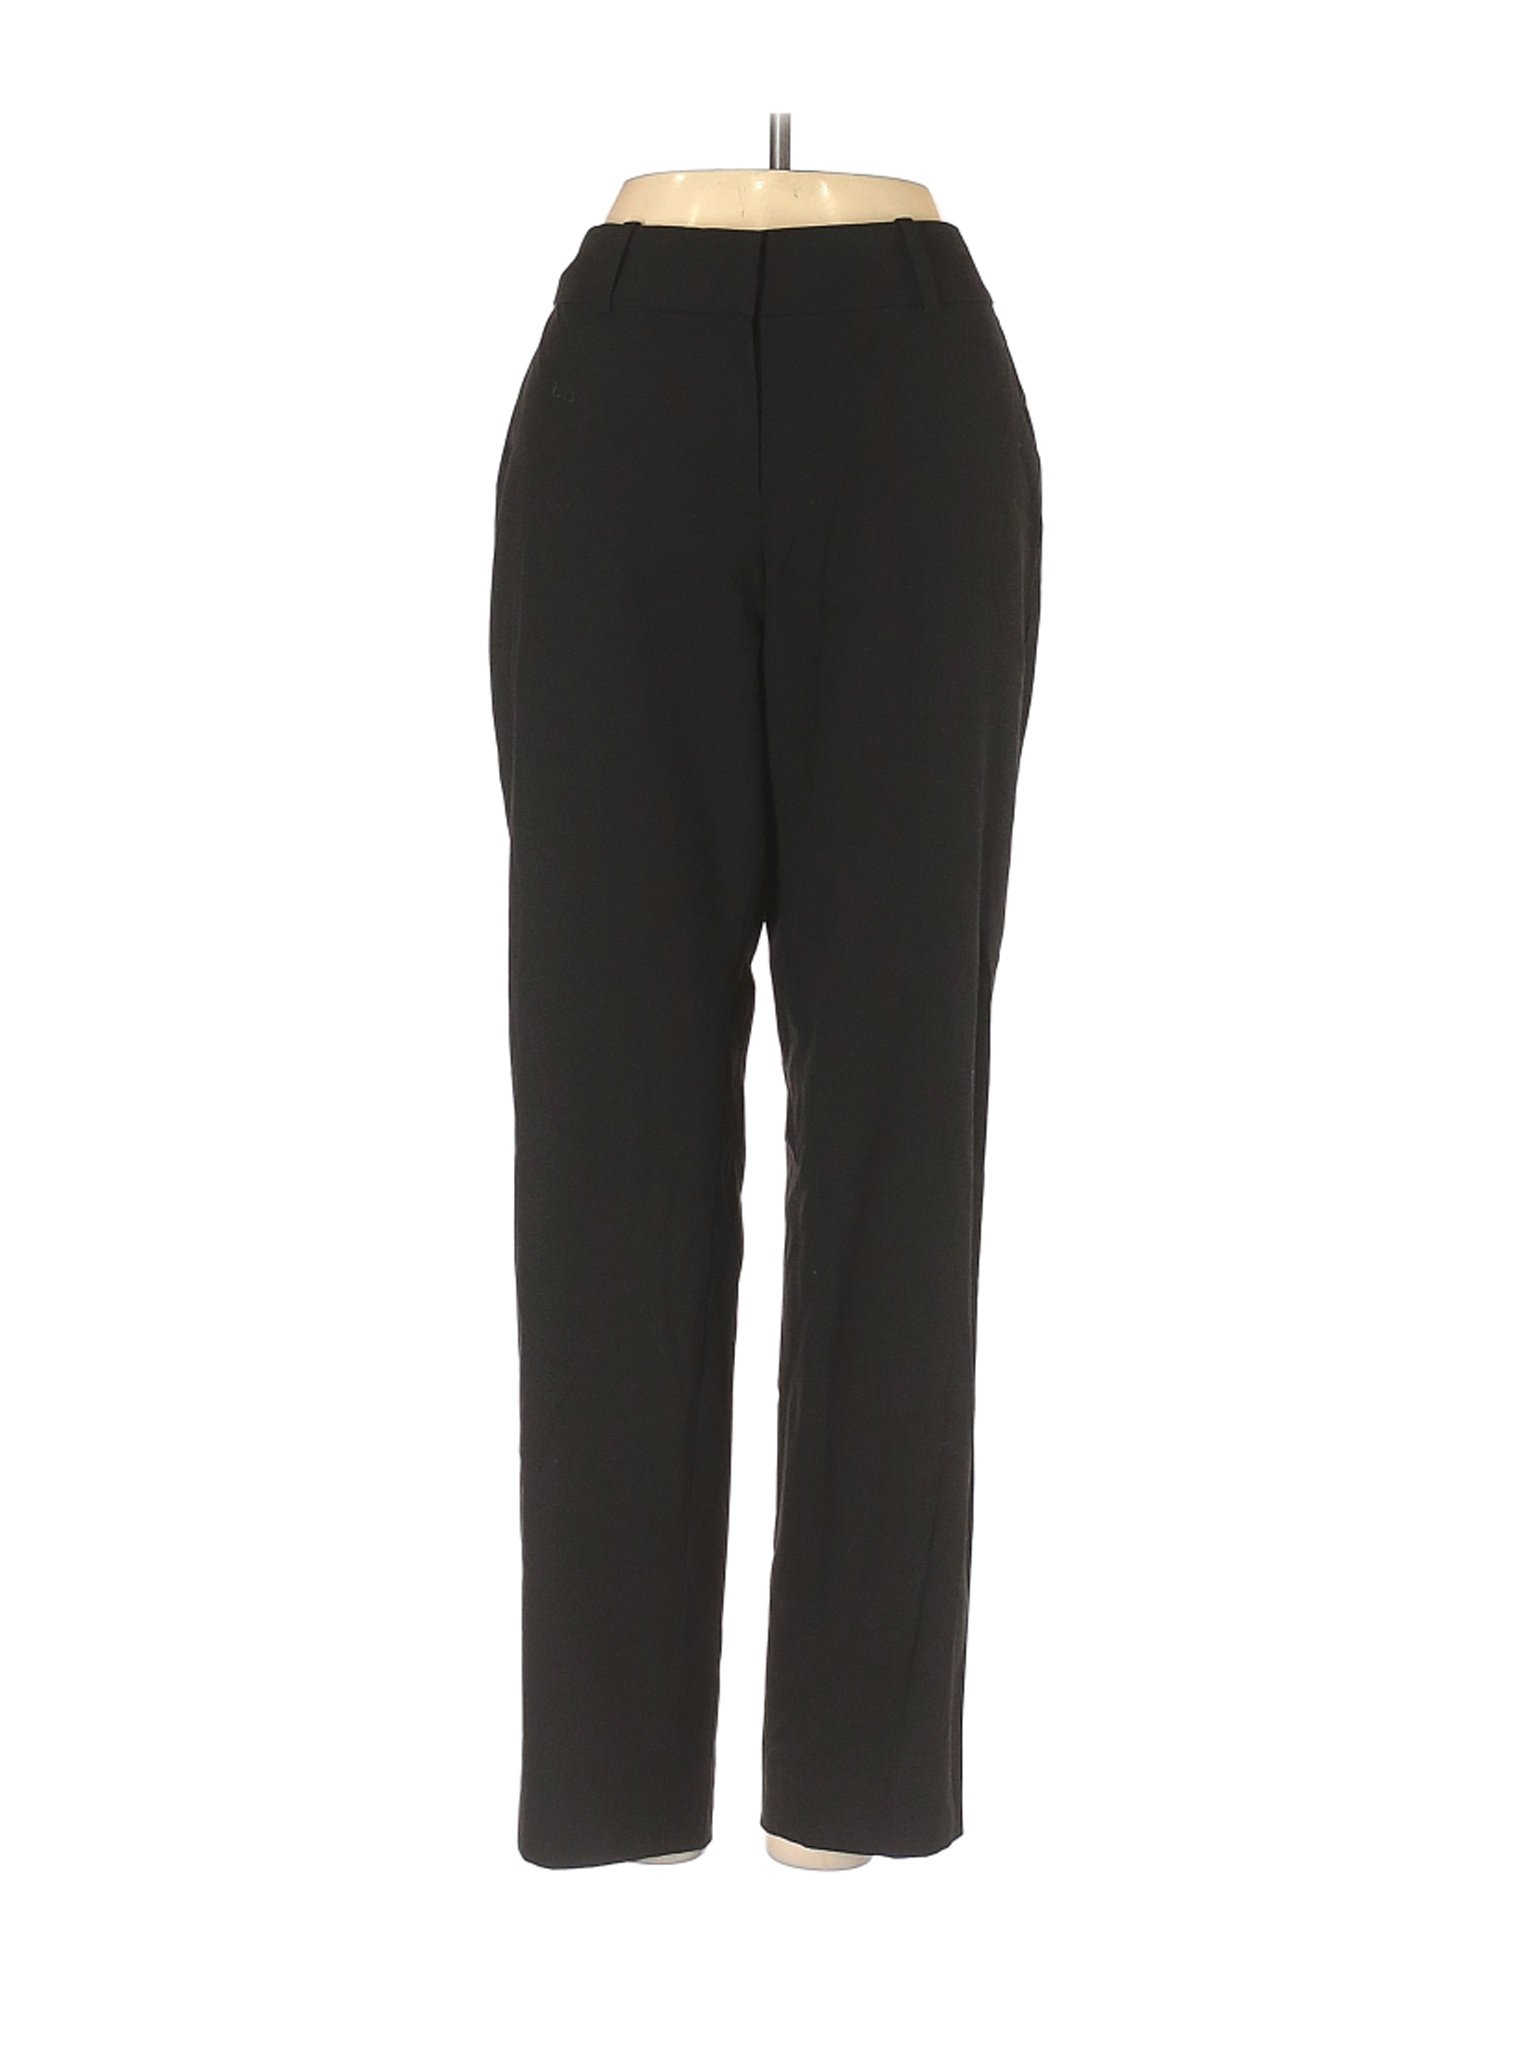 Ann Taylor Women Black Dress Pants 2 Petites | eBay